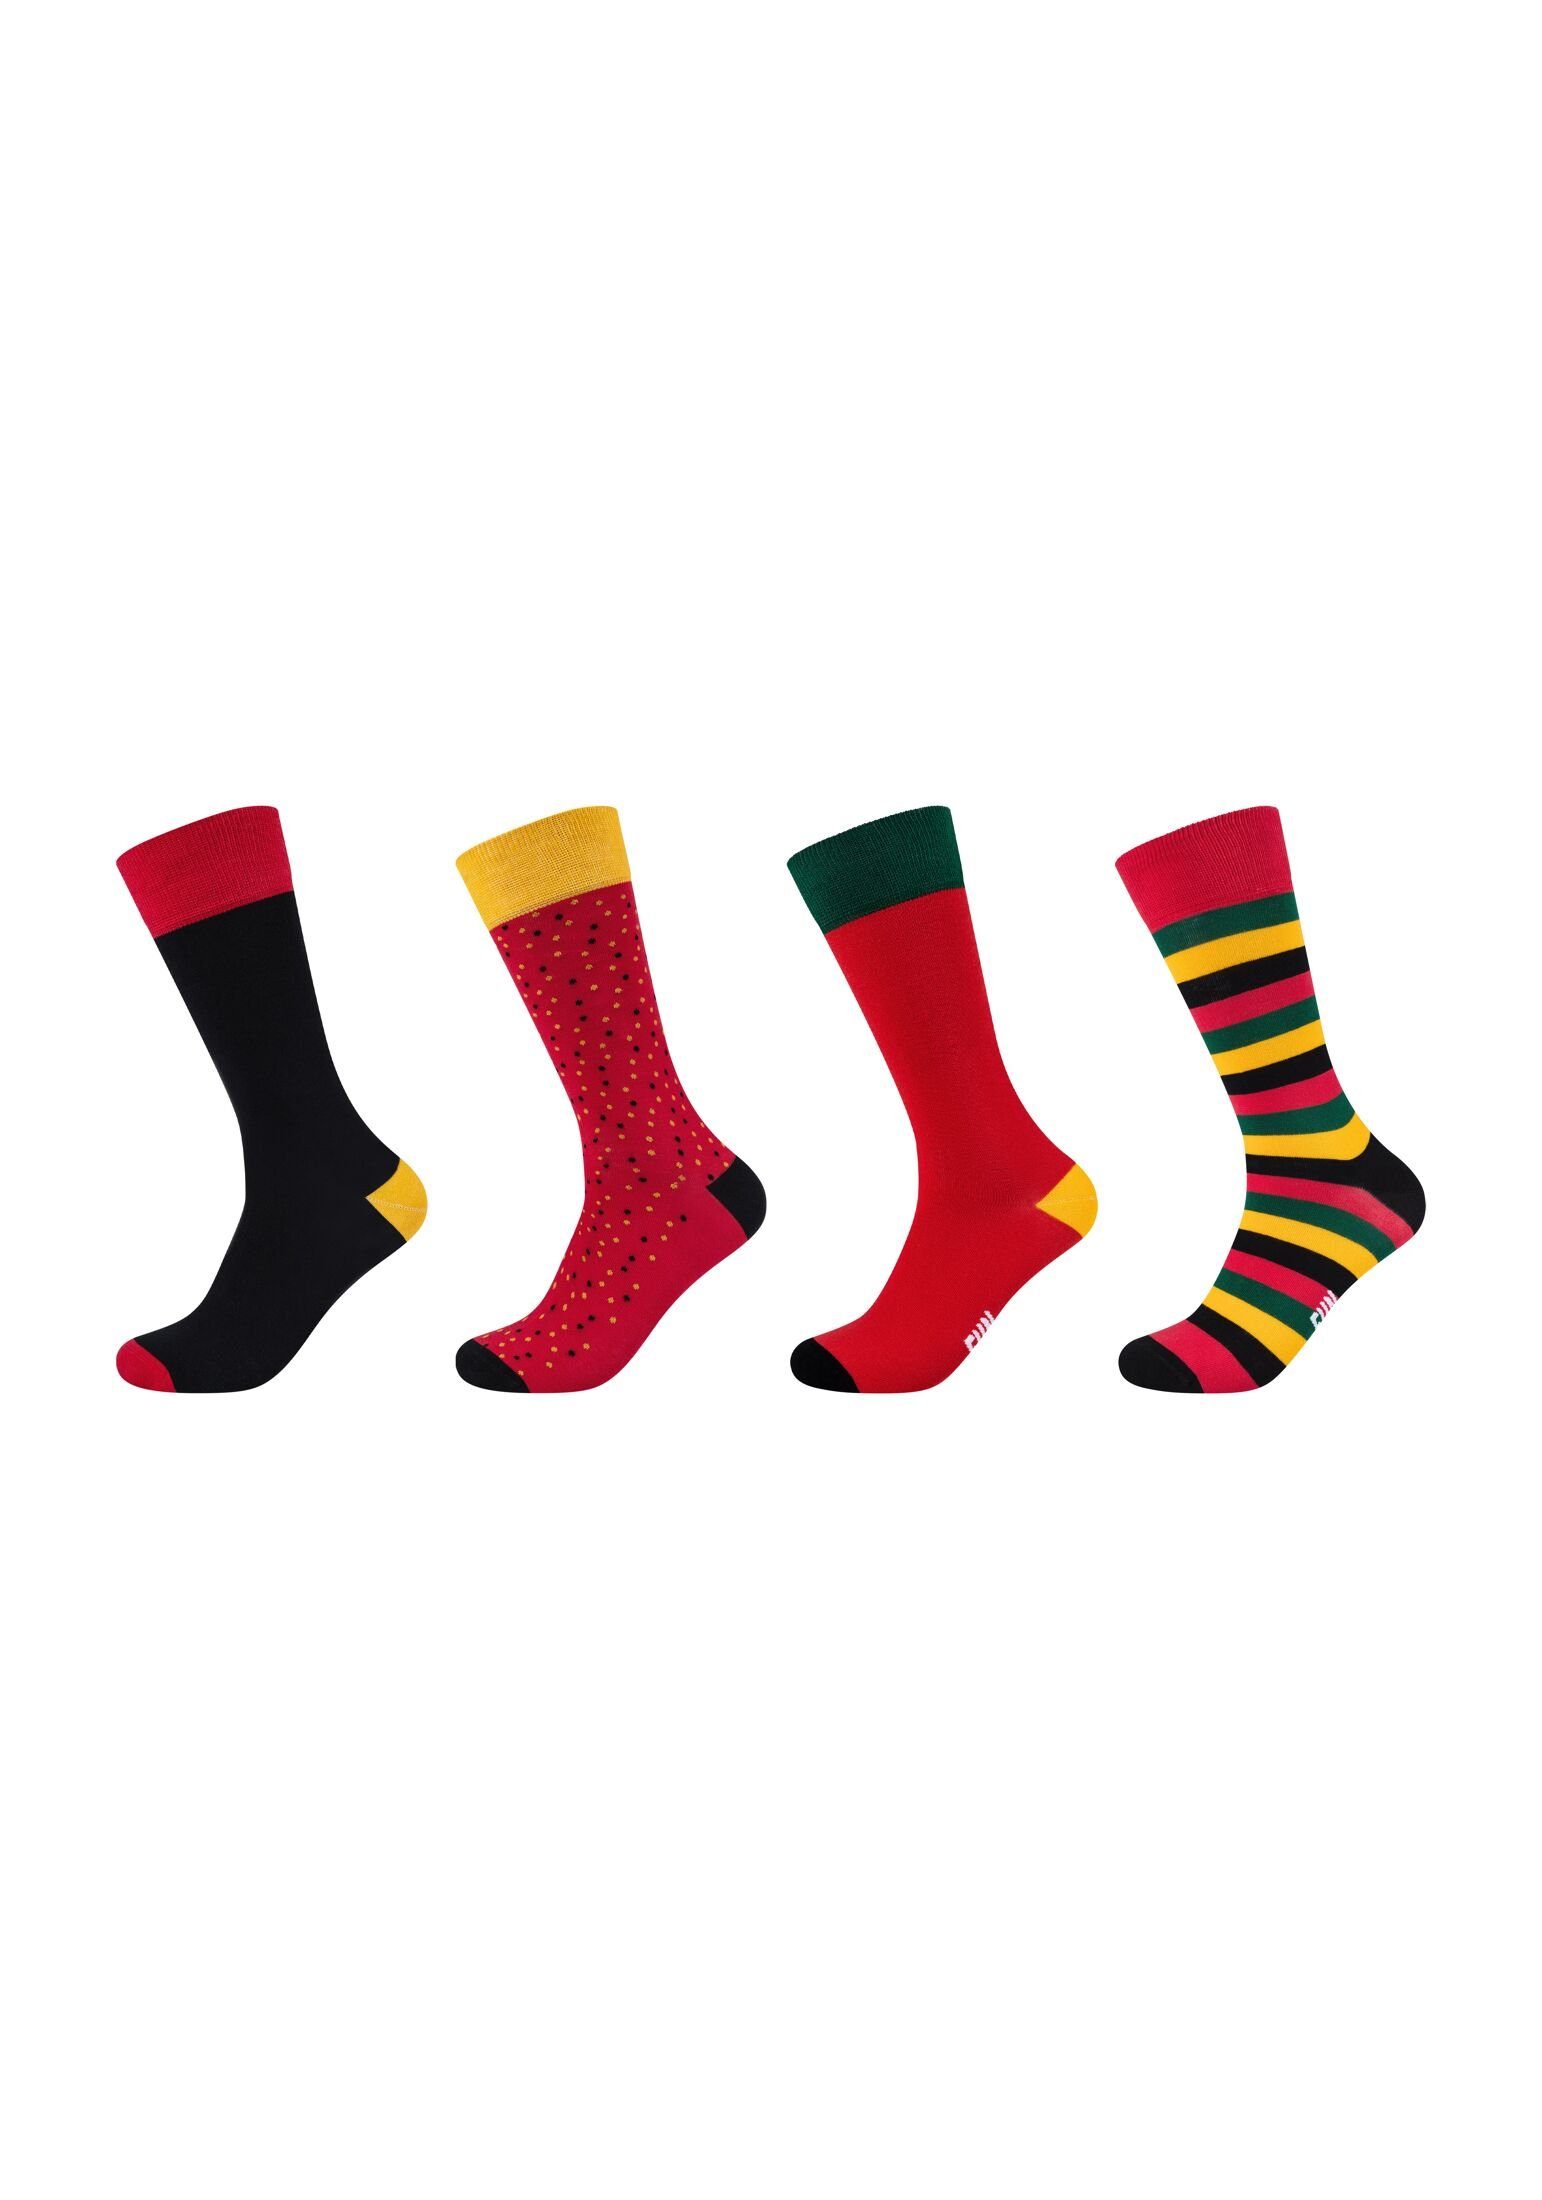 Fun Socks Socken Socken 4er Pack aurora red | Socken